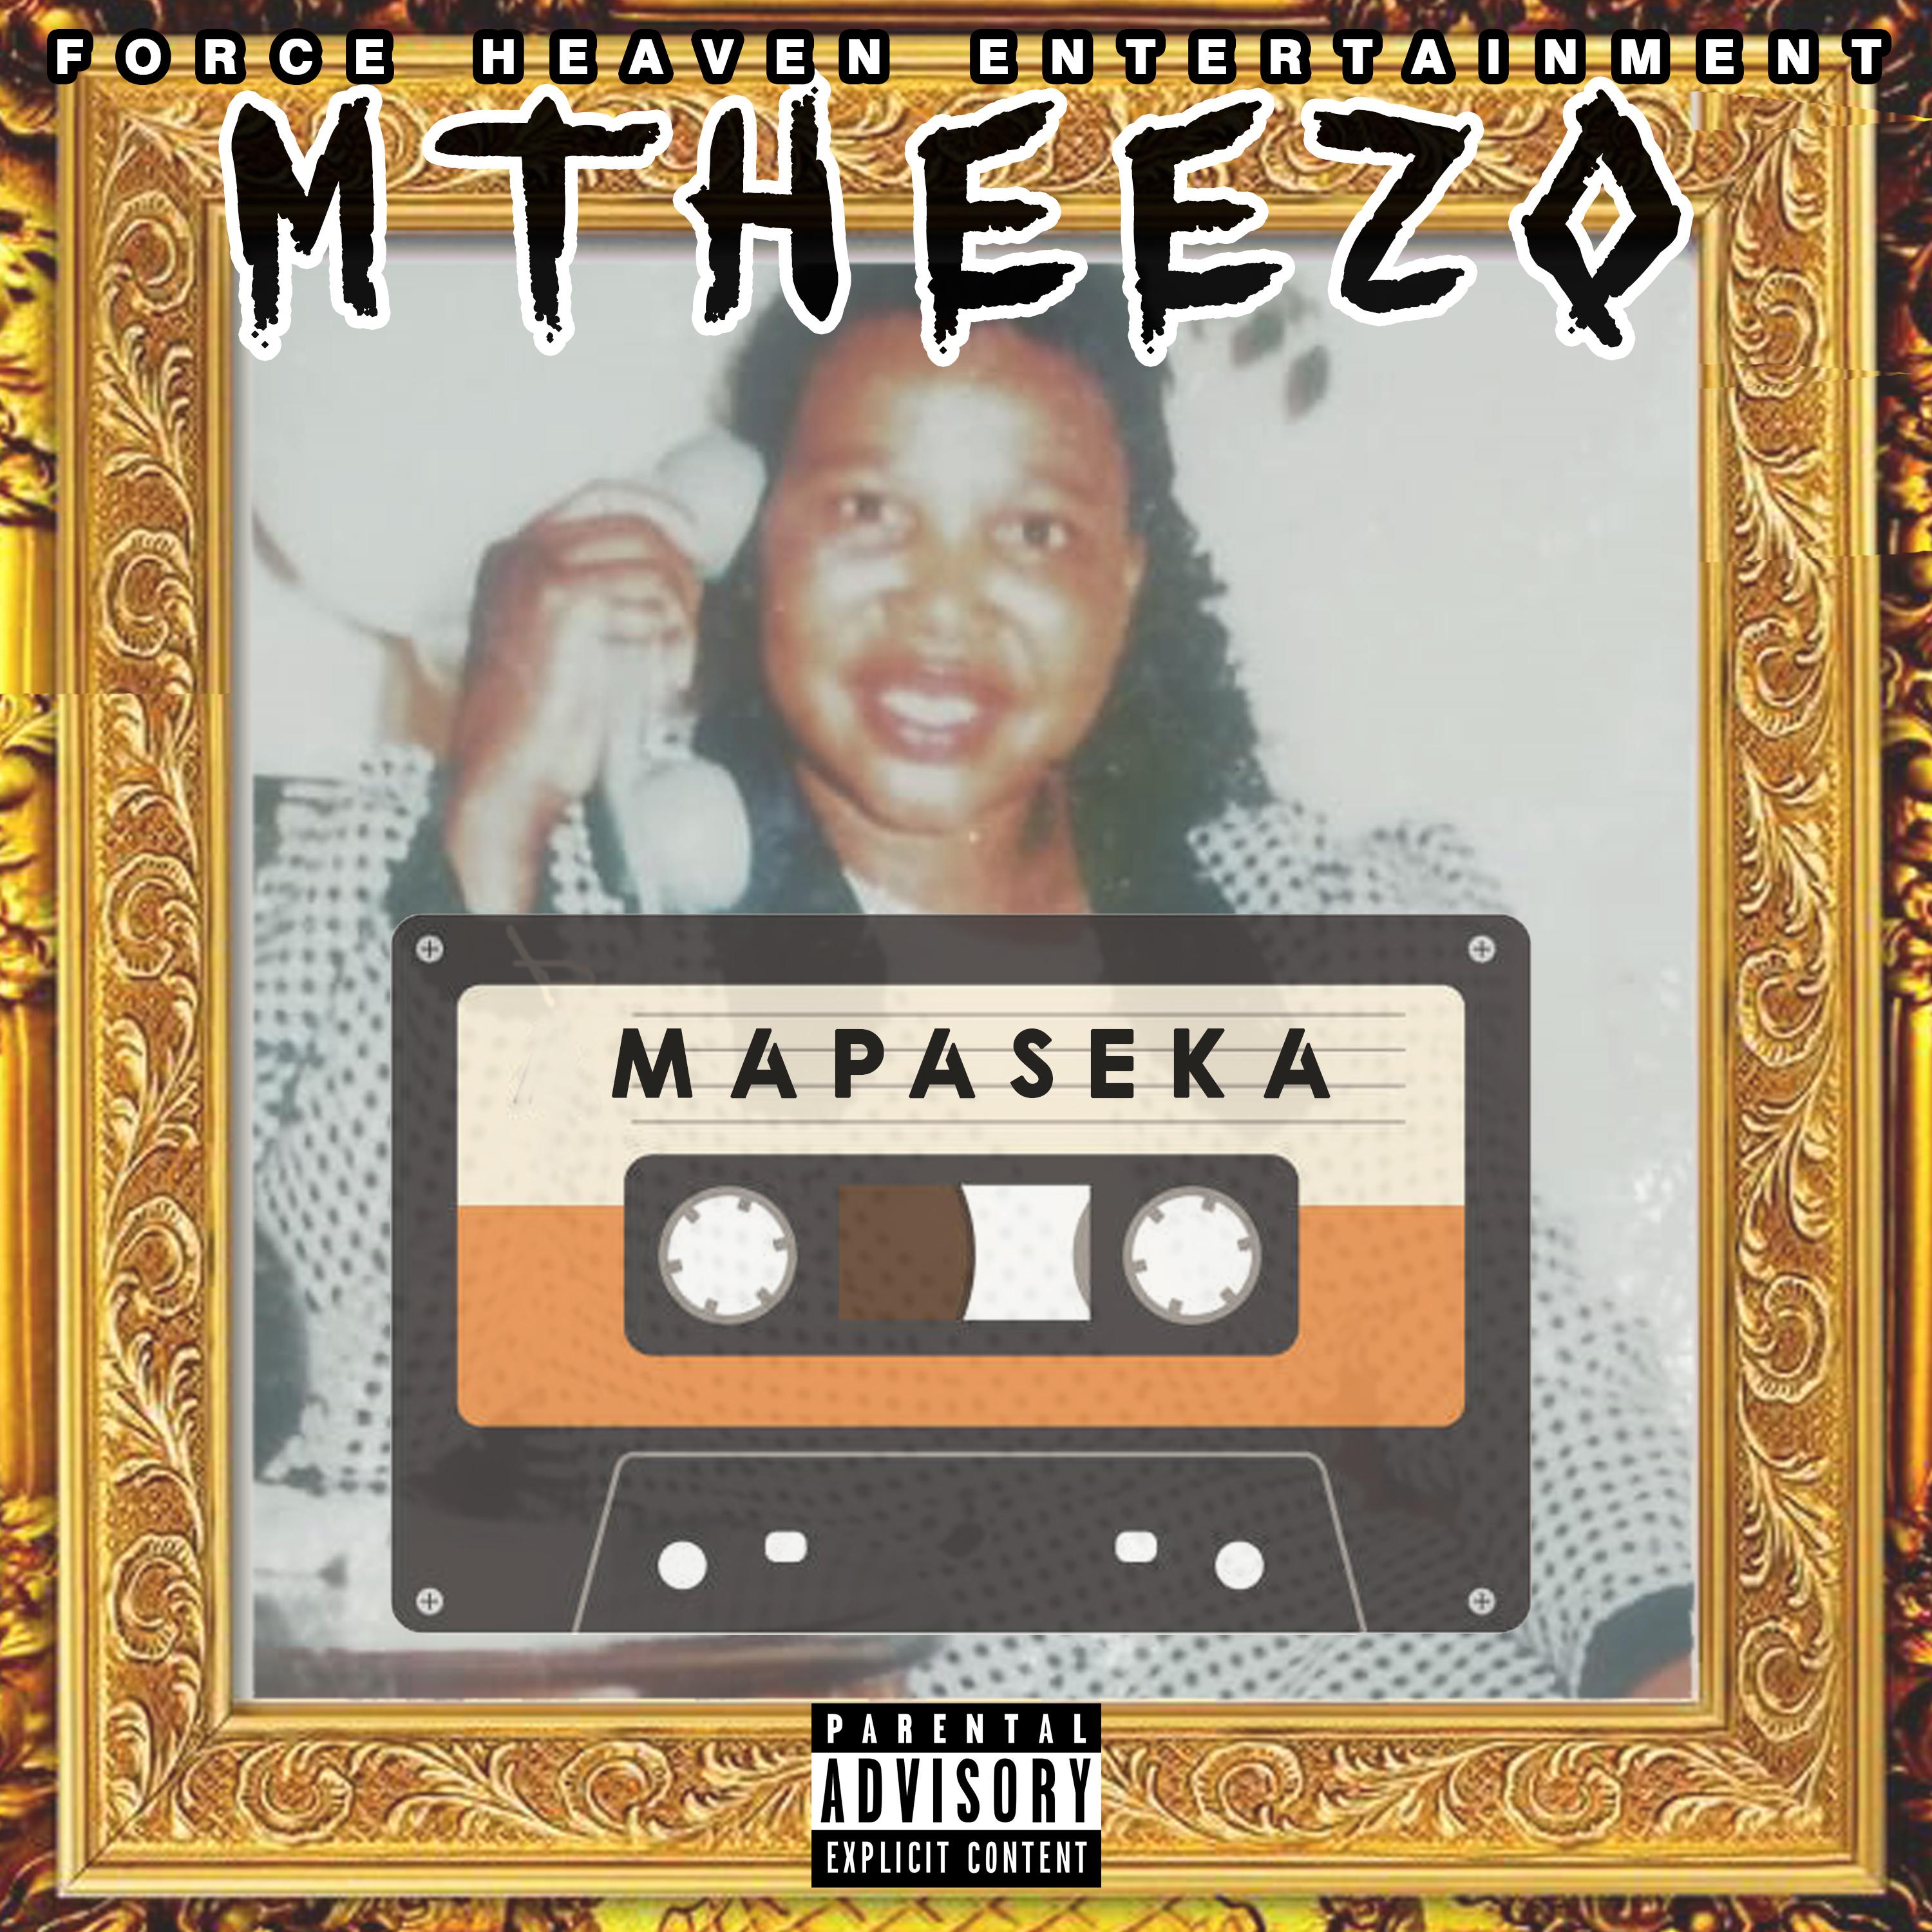 Mtheezo - Muntuza (Remastered)